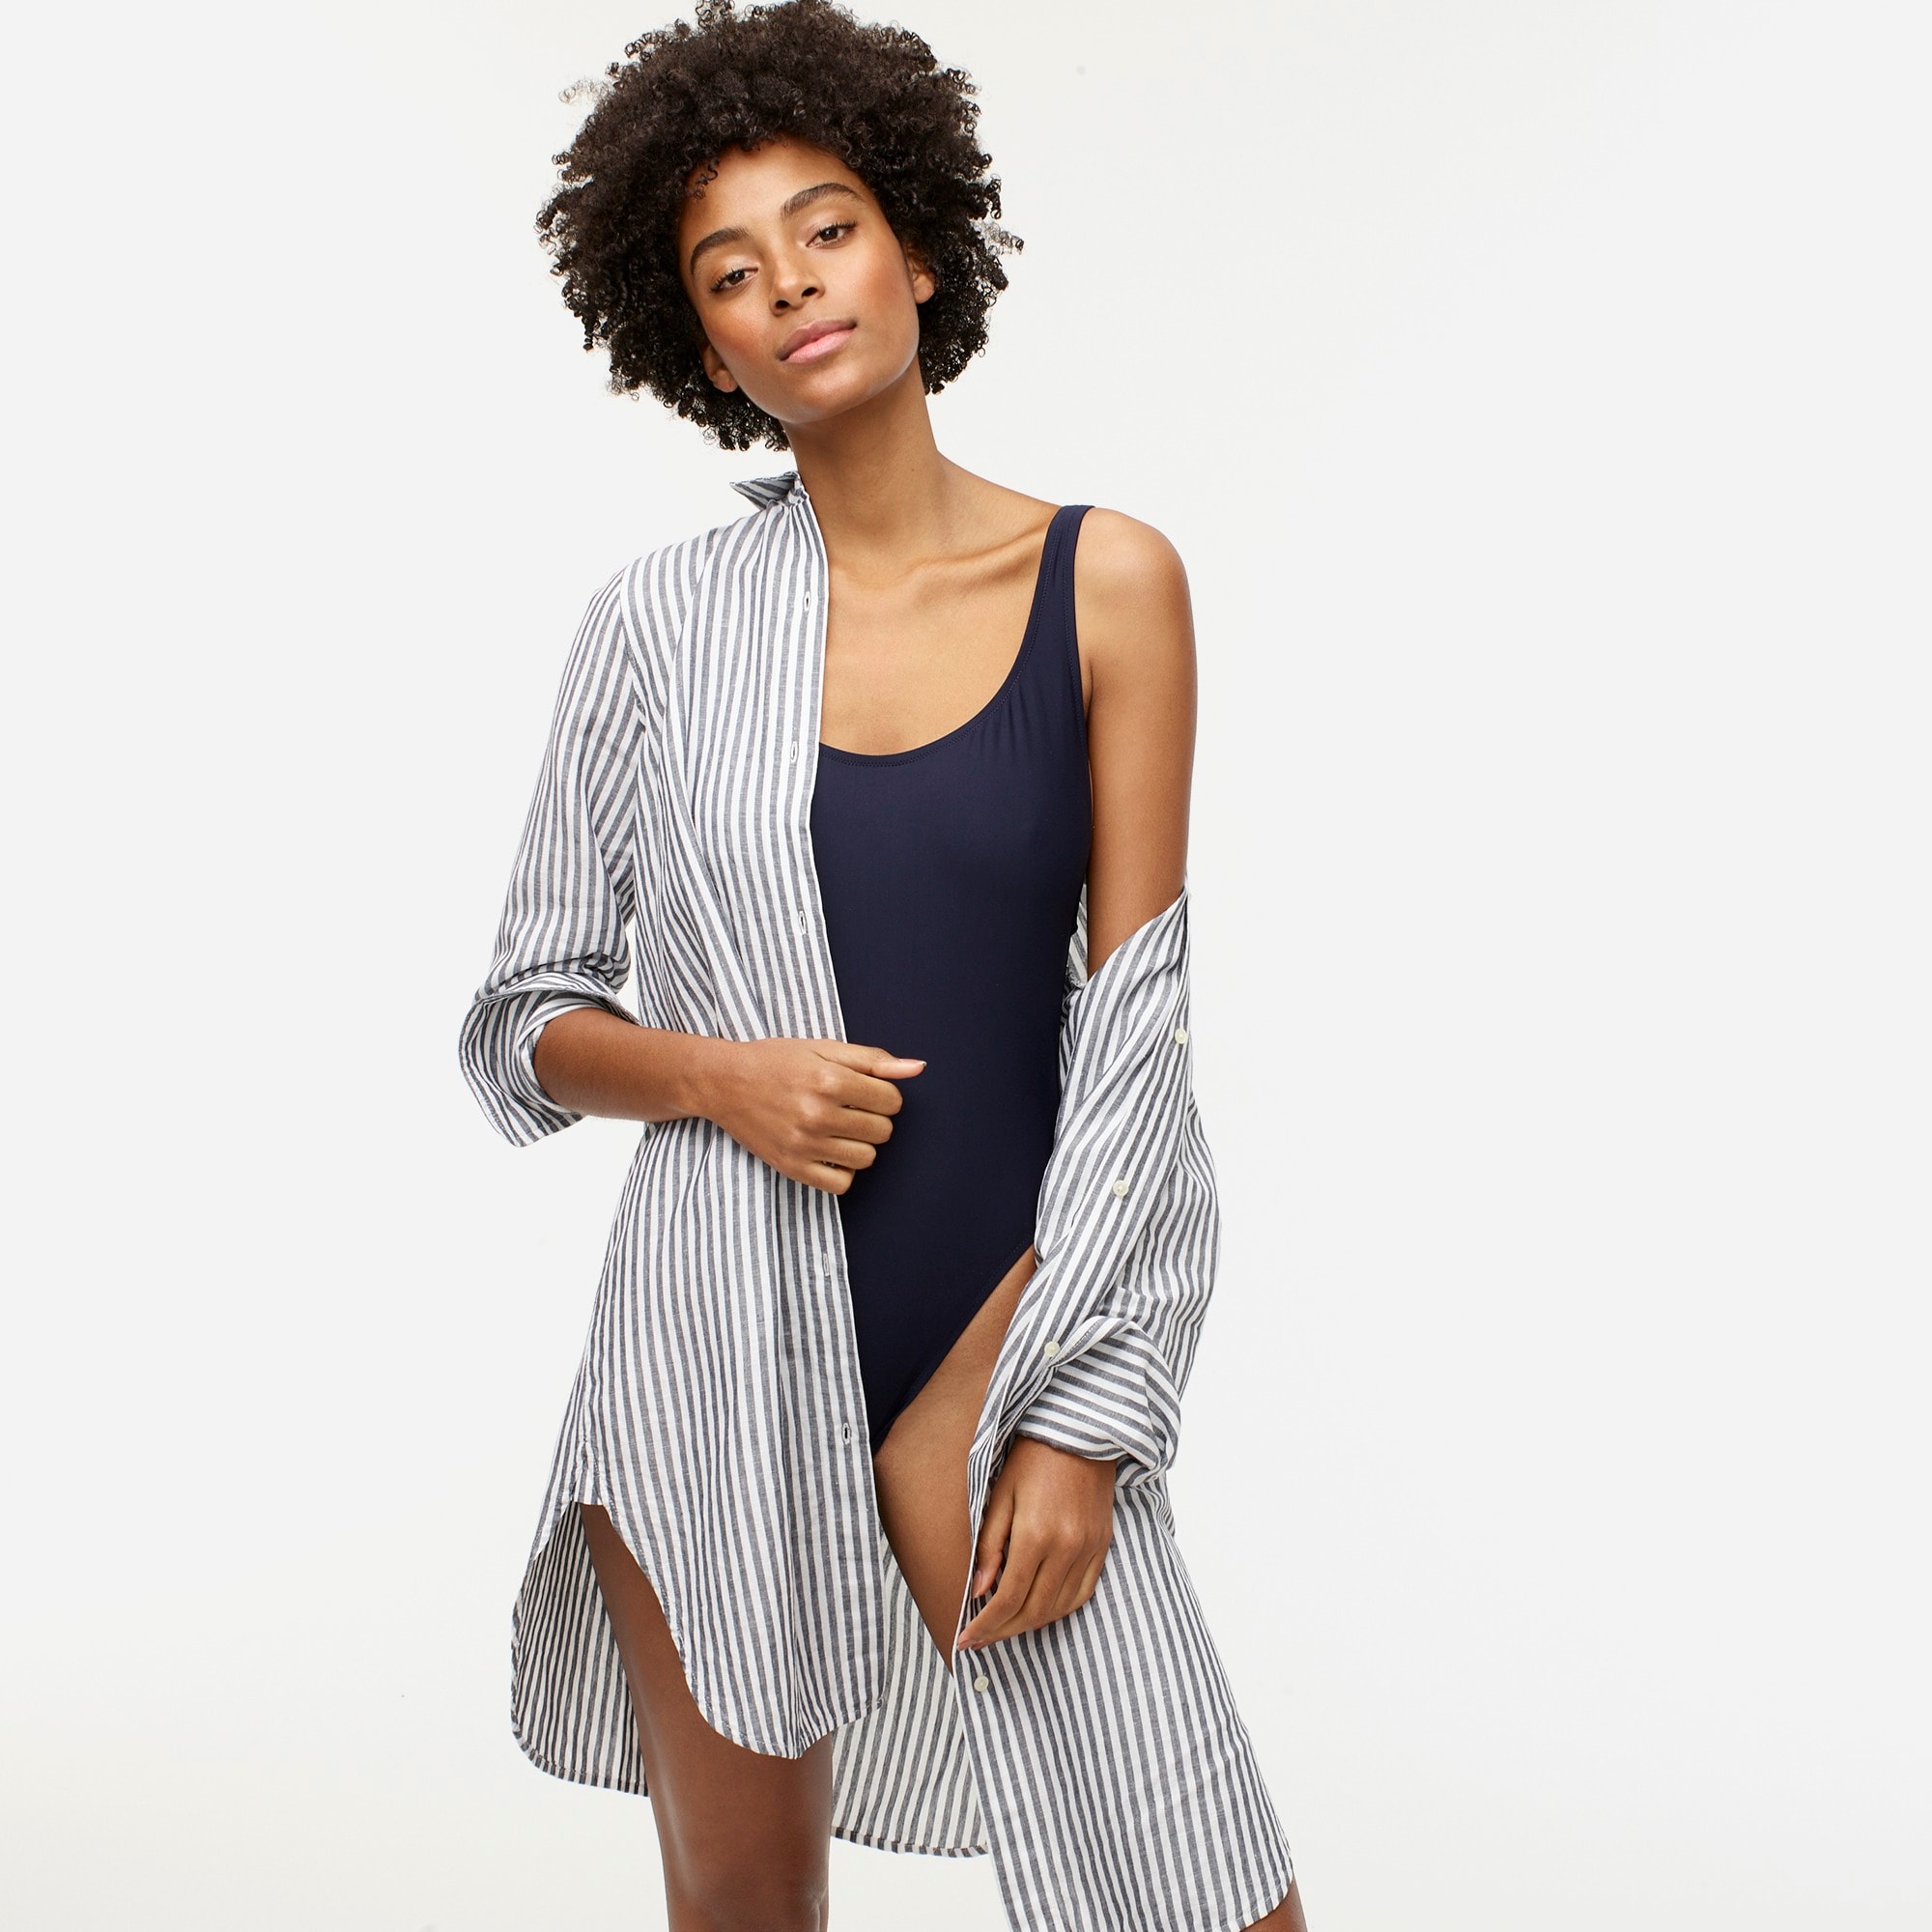 Jcrew Classic-fit beach shirt in striped linen-cotton blend